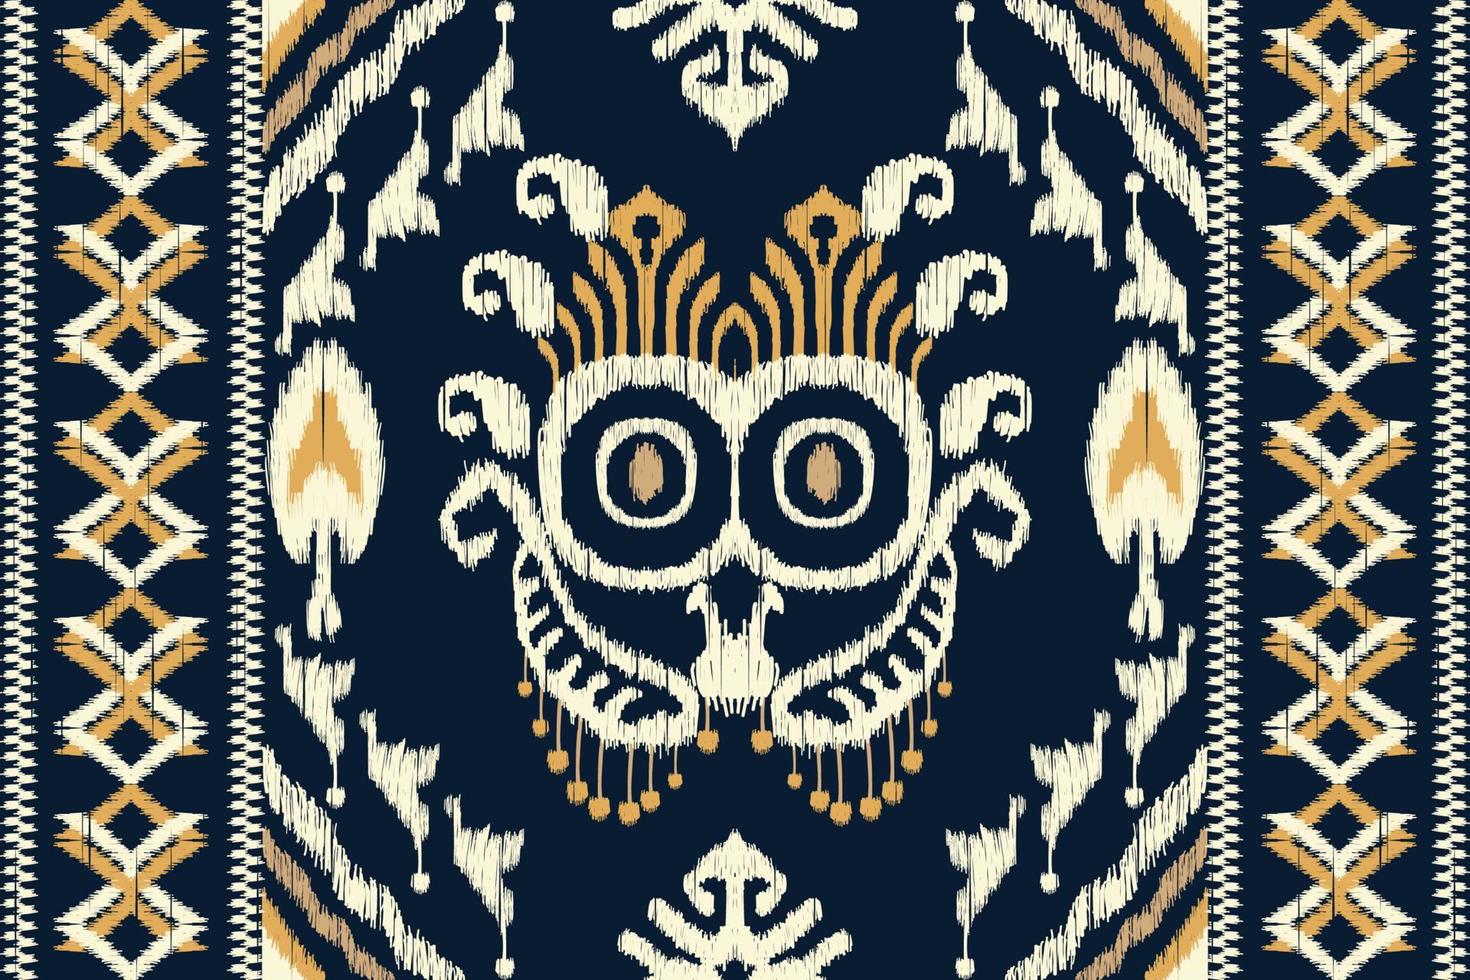 bordado floral ikat paisley sobre fondo azul marino.patrón oriental étnico geométrico tradicional.ilustración vectorial abstracta de estilo azteca.diseño para textura,tela,ropa,envoltura,bufanda,sarong. vector